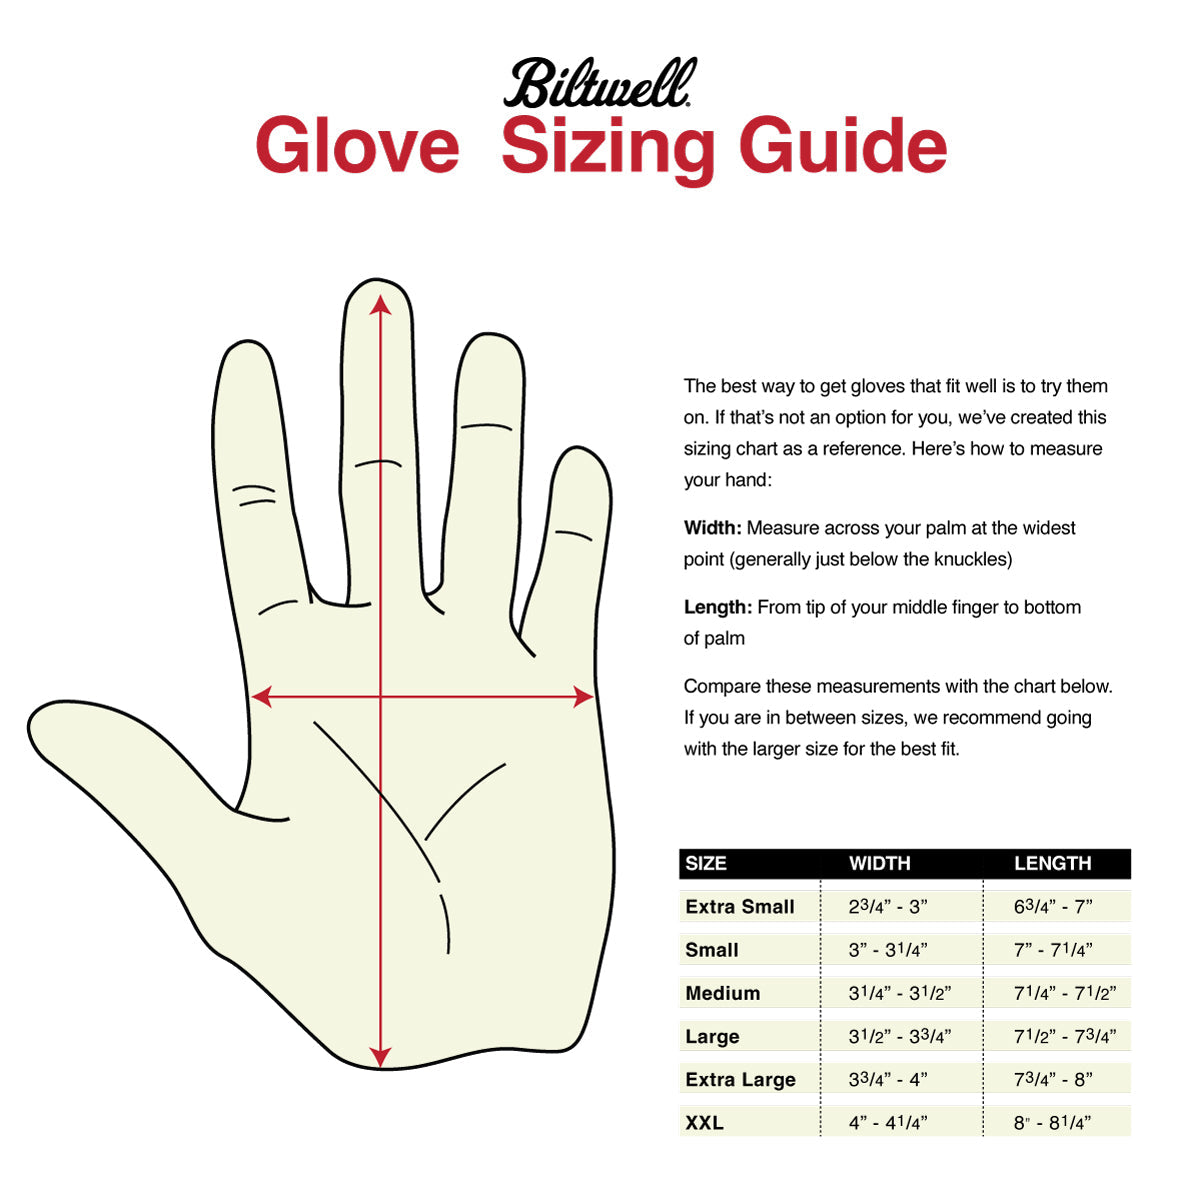 CLOSEOUT Work Gloves Gen 1 - Gold/Suede